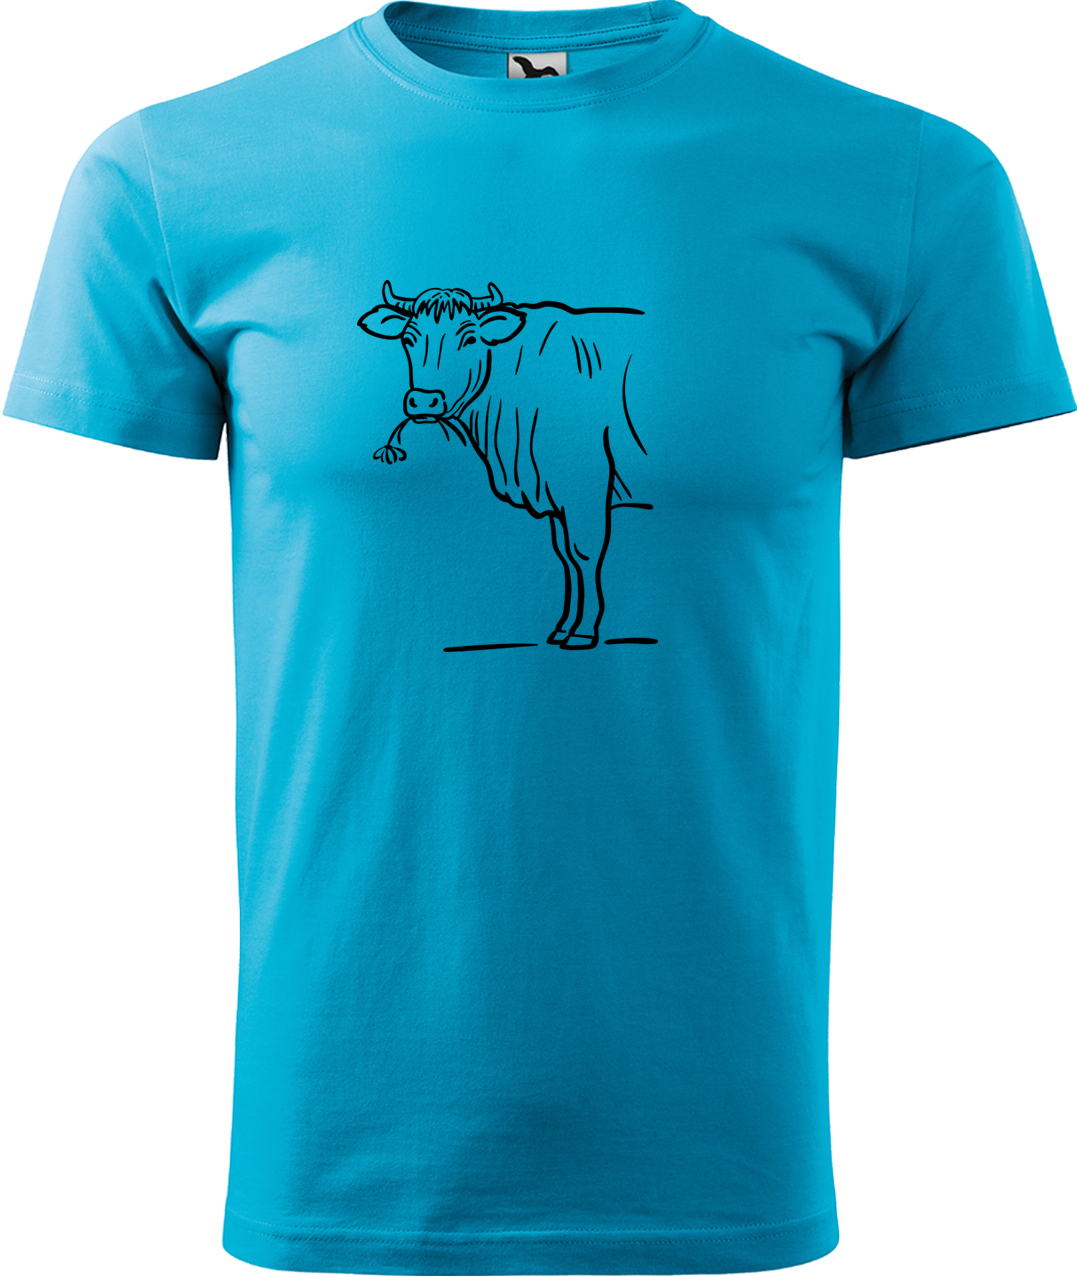 Pánské tričko s krávou - Býk Velikost: L, Barva: Tyrkysová (44), Střih: pánský